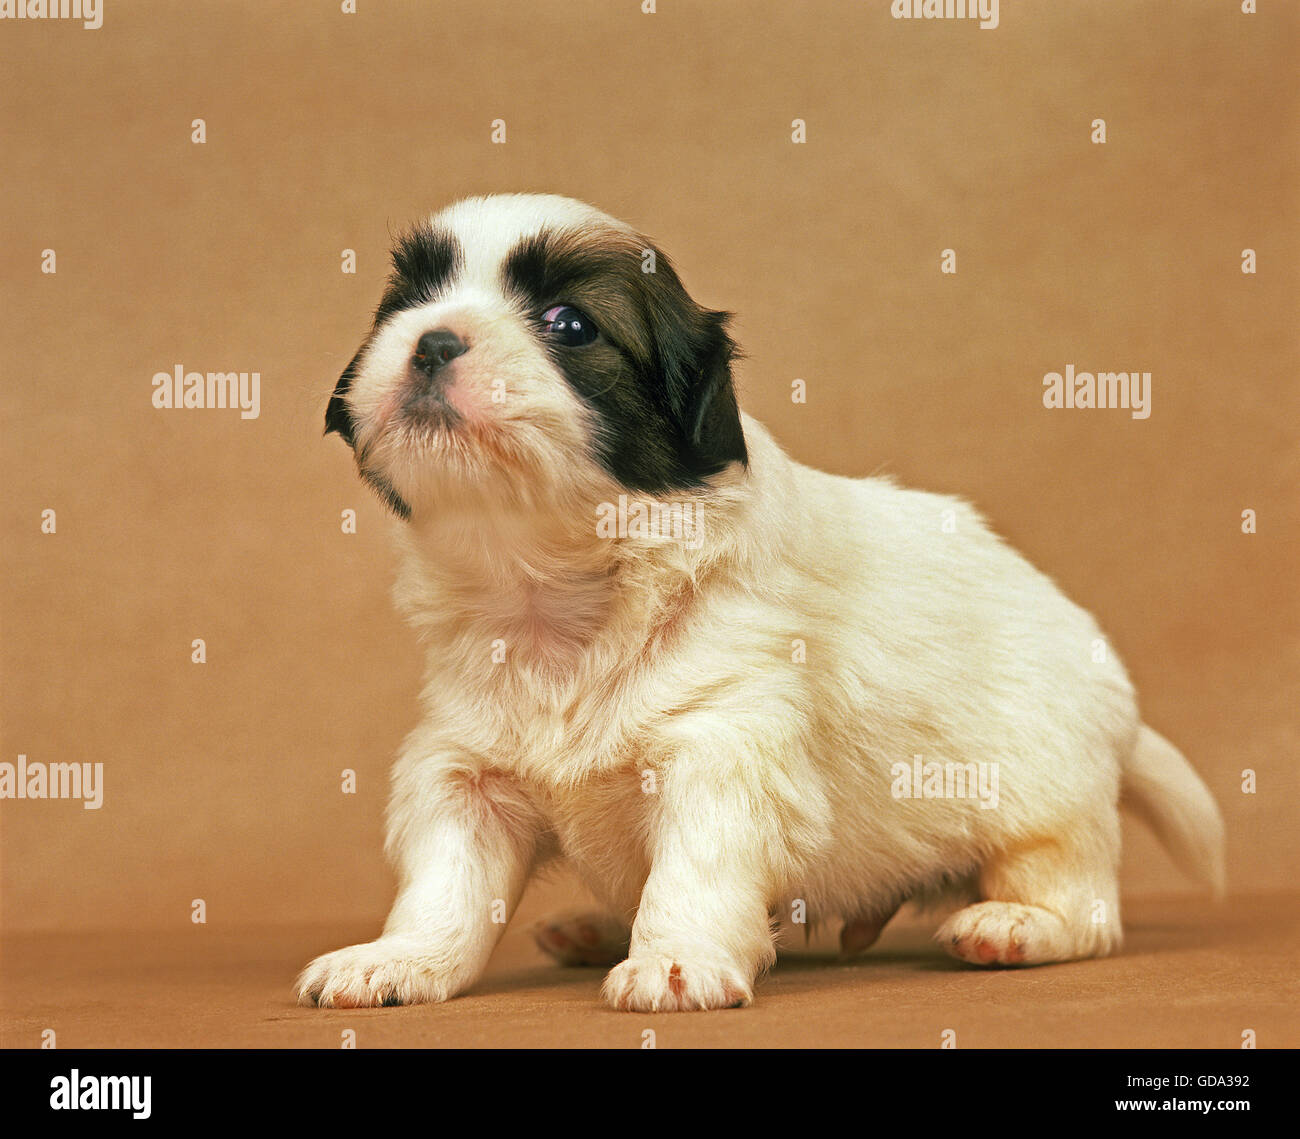 Tibetan Spaniel, Pup Stock Photo